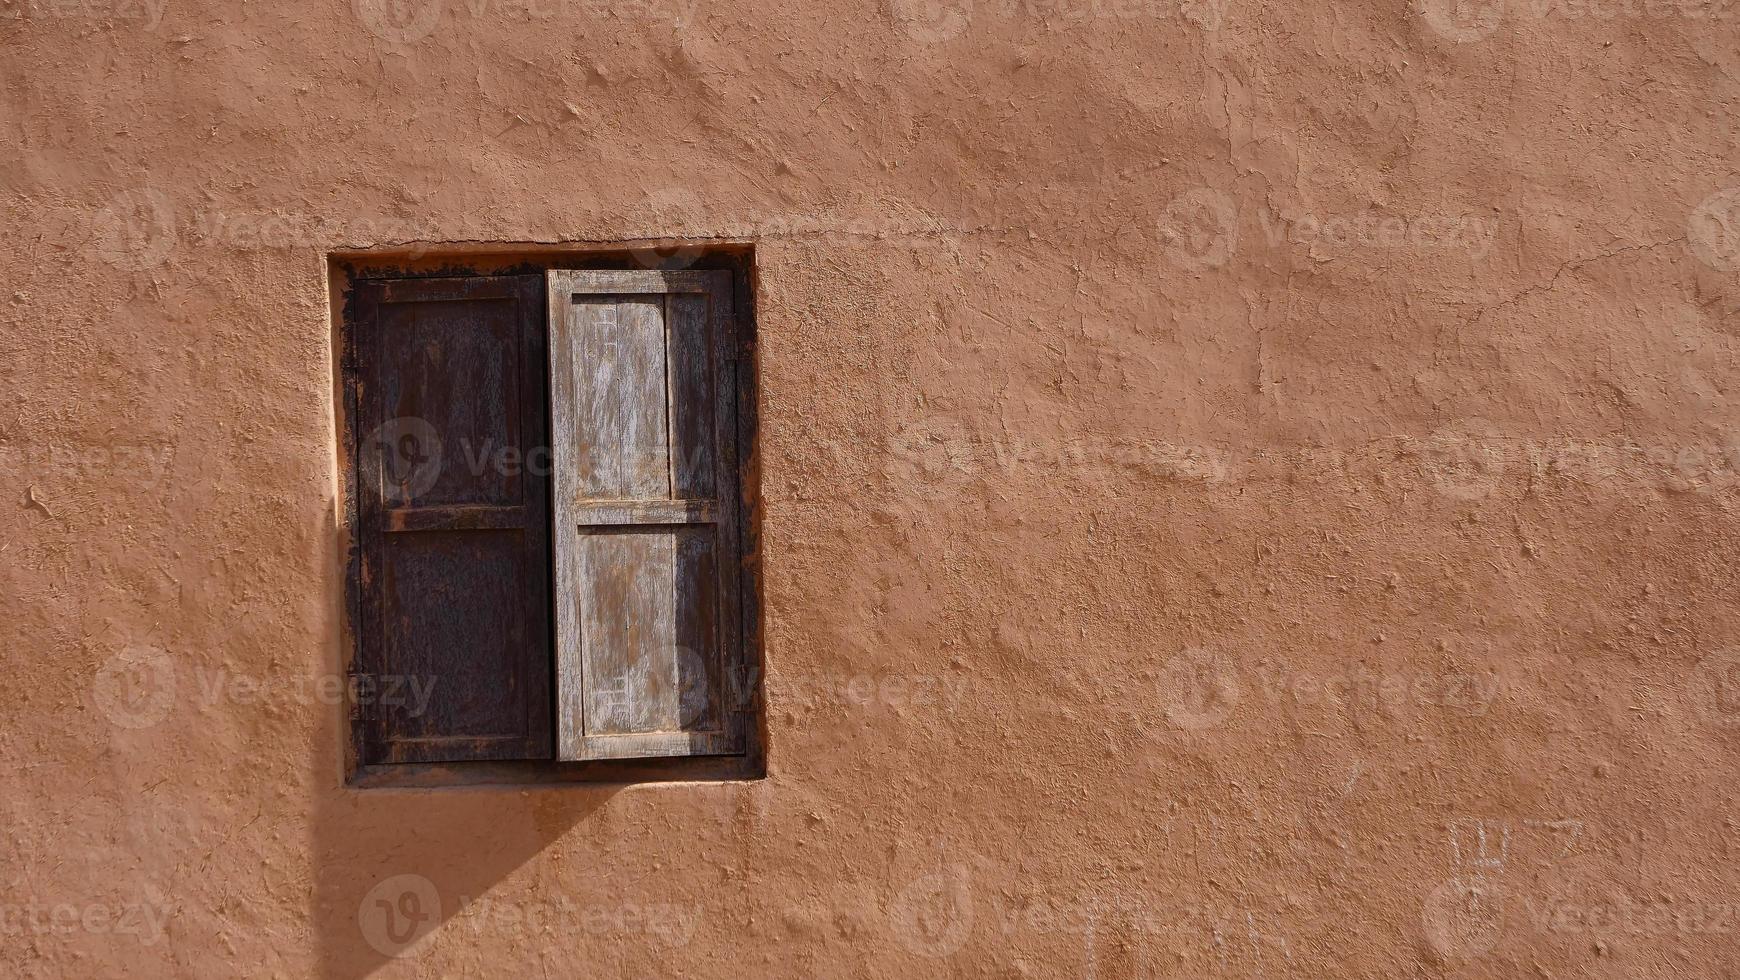 janela de madeira da parede da casa antiga no vale da vila de Tuyoq, em xinjiang, china foto